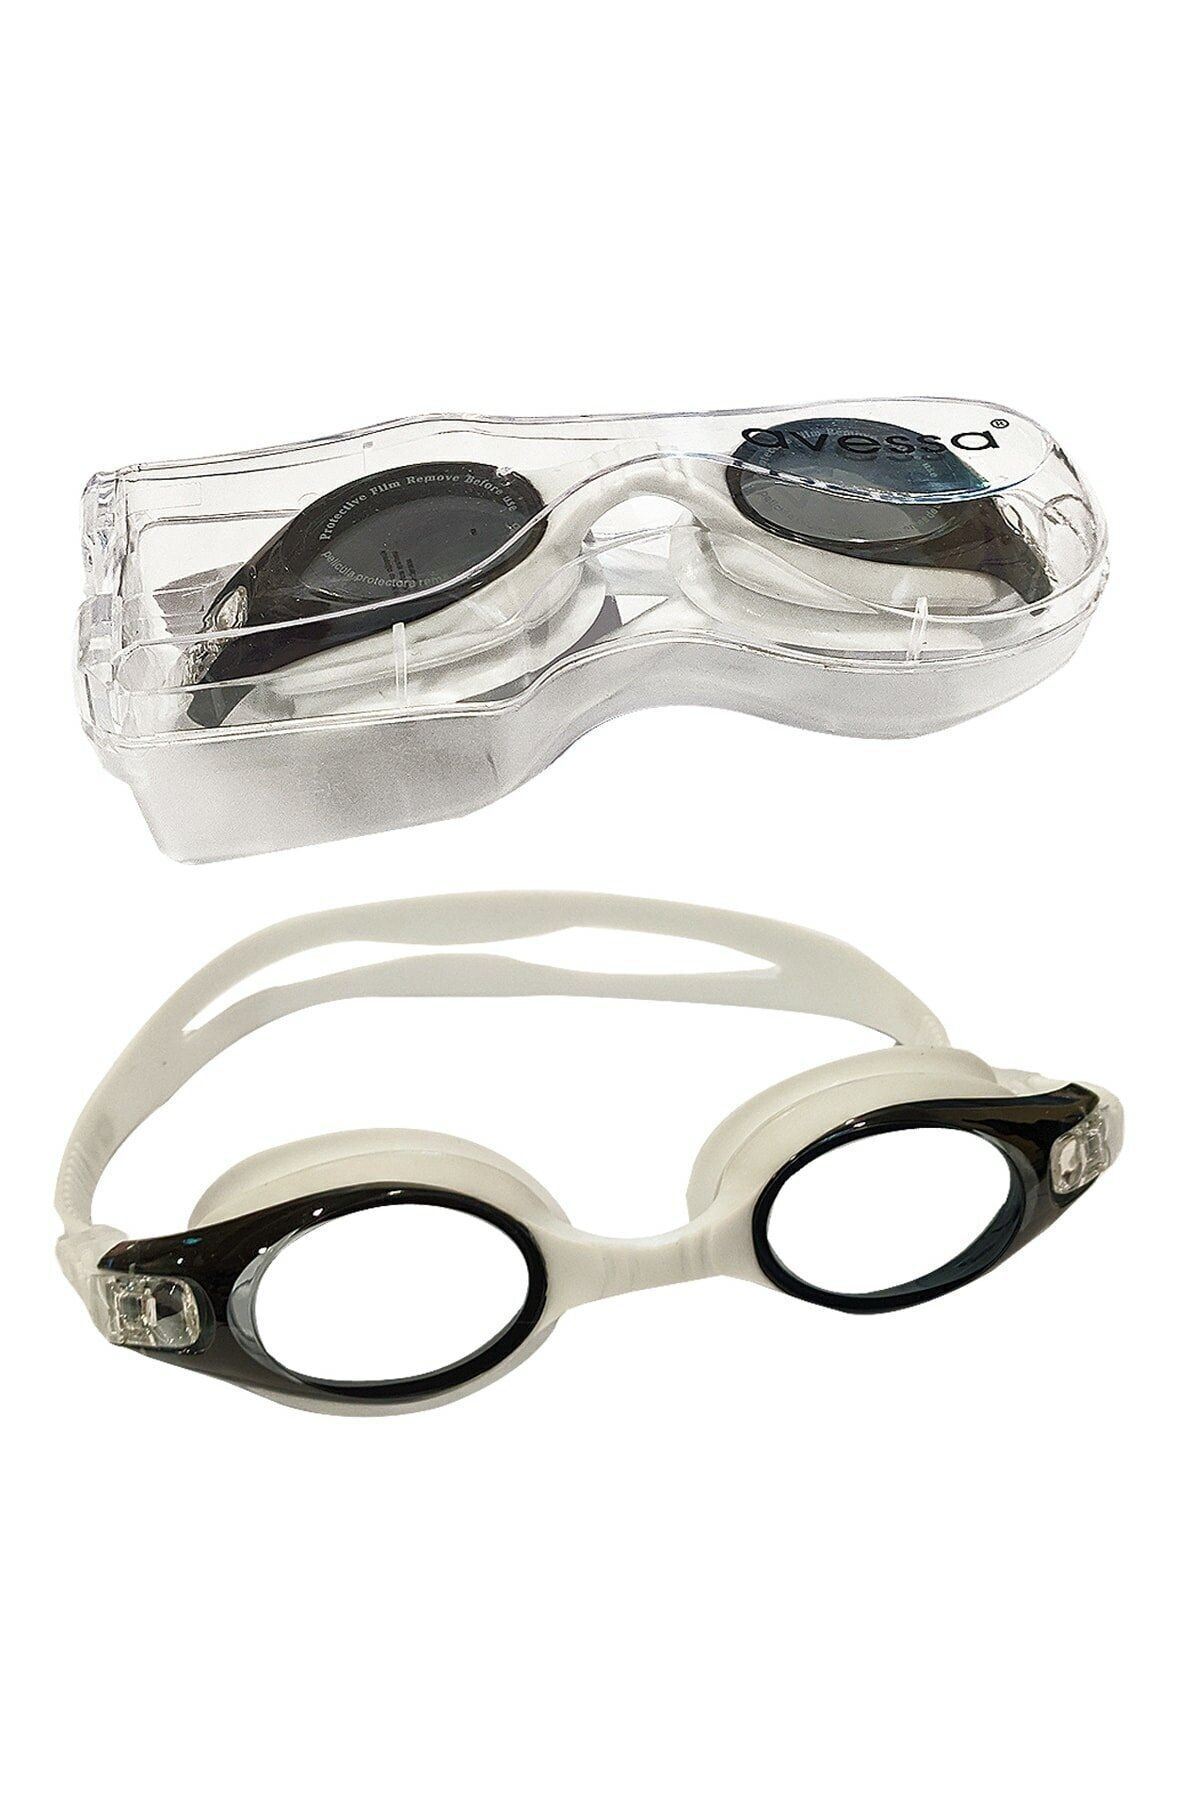 Avessa Yetişkin Yüzücü Gözlüğü - Deniz Gözlüğü - Havuz Gözlüğü